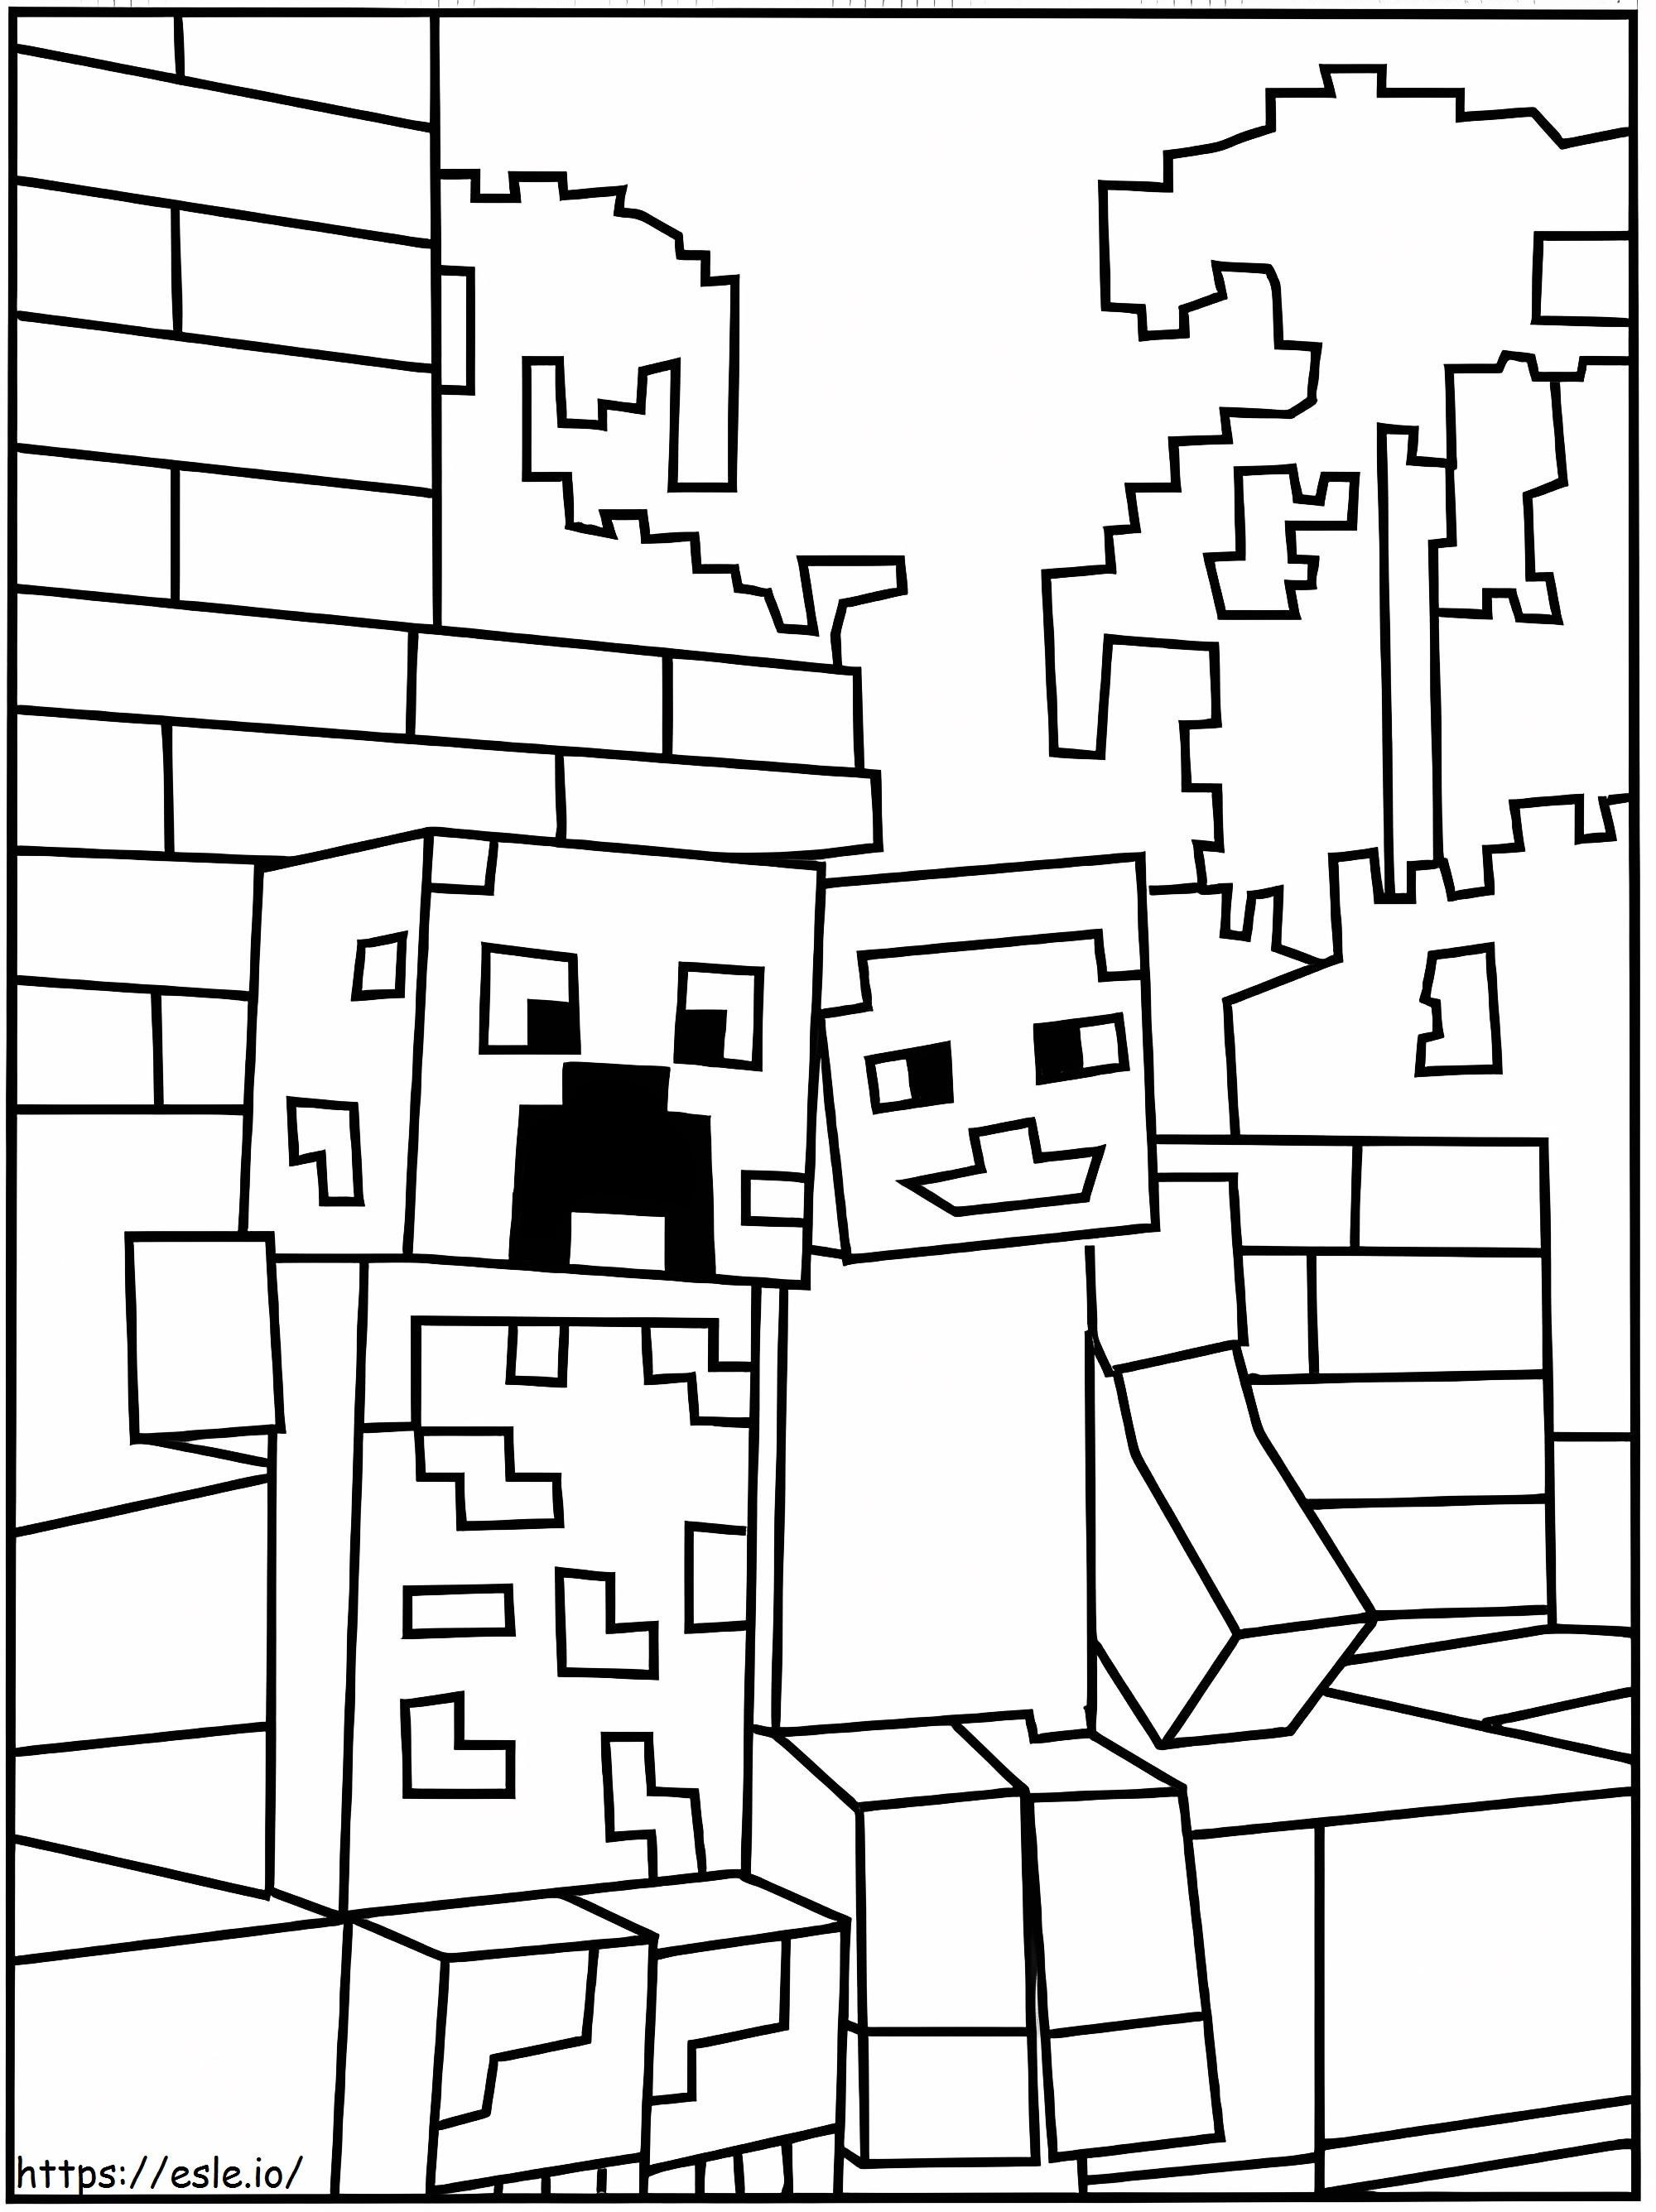 Creeper i Steve z Minecrafta kolorowanka